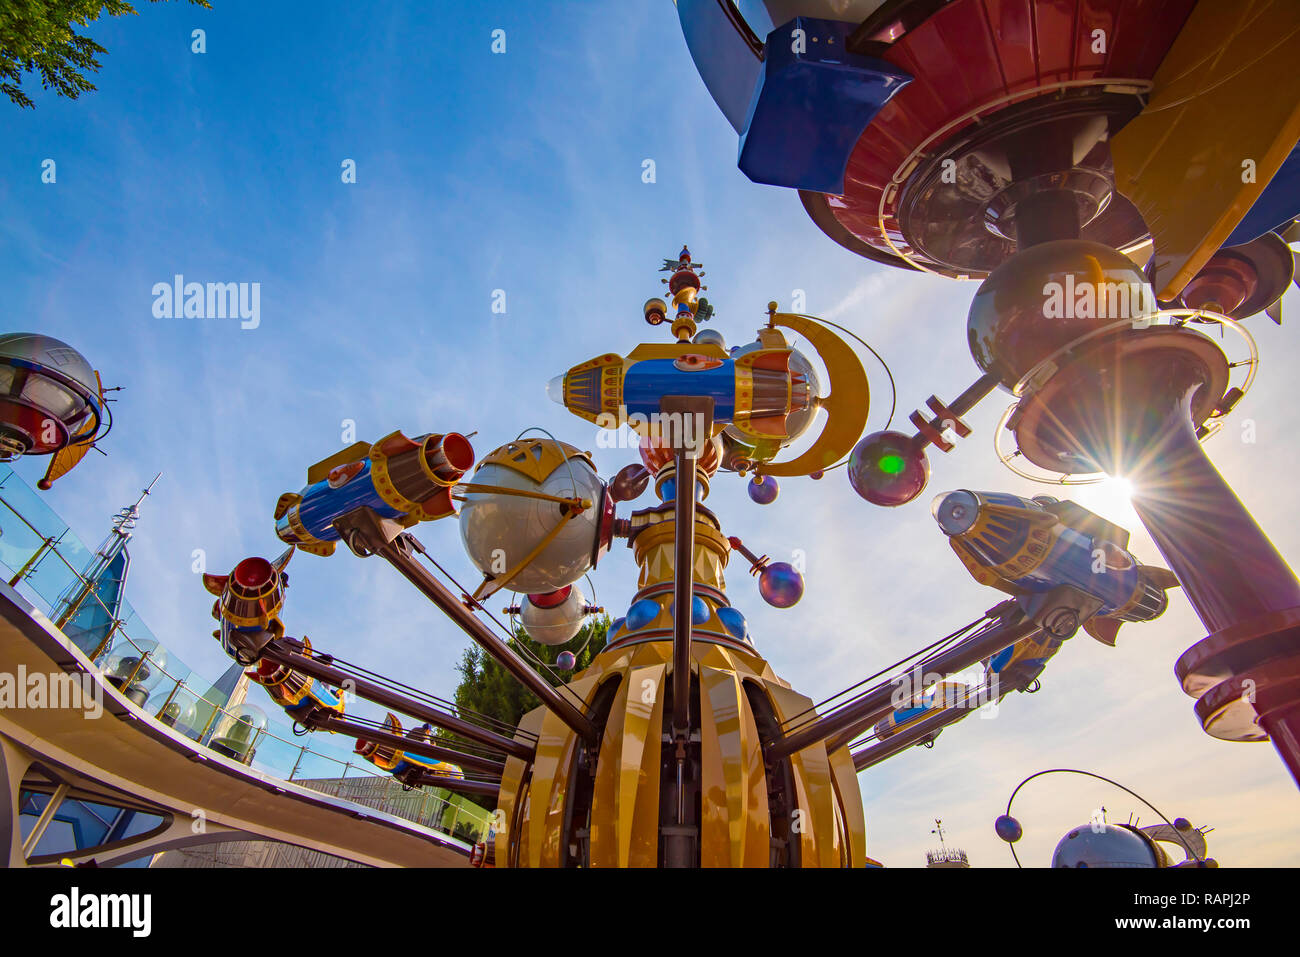 El Orbitron un paseo Rocket-Spinner en acción en Disneyland Anaheim de California, Los Ángeles, EE.UU. Foto de stock